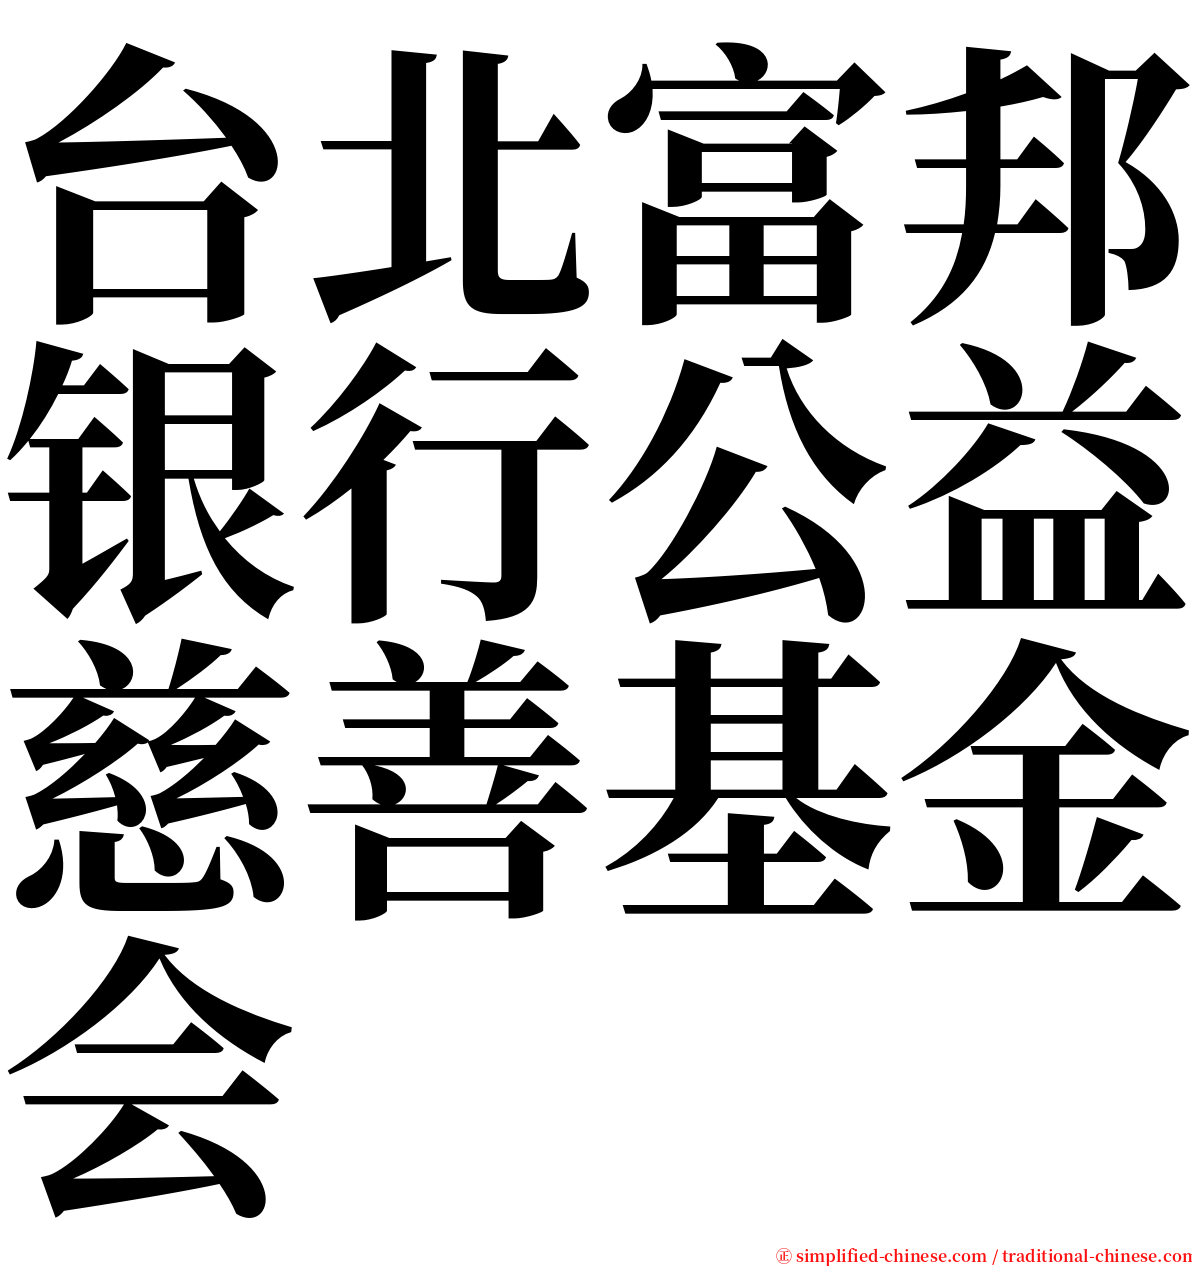 台北富邦银行公益慈善基金会 serif font